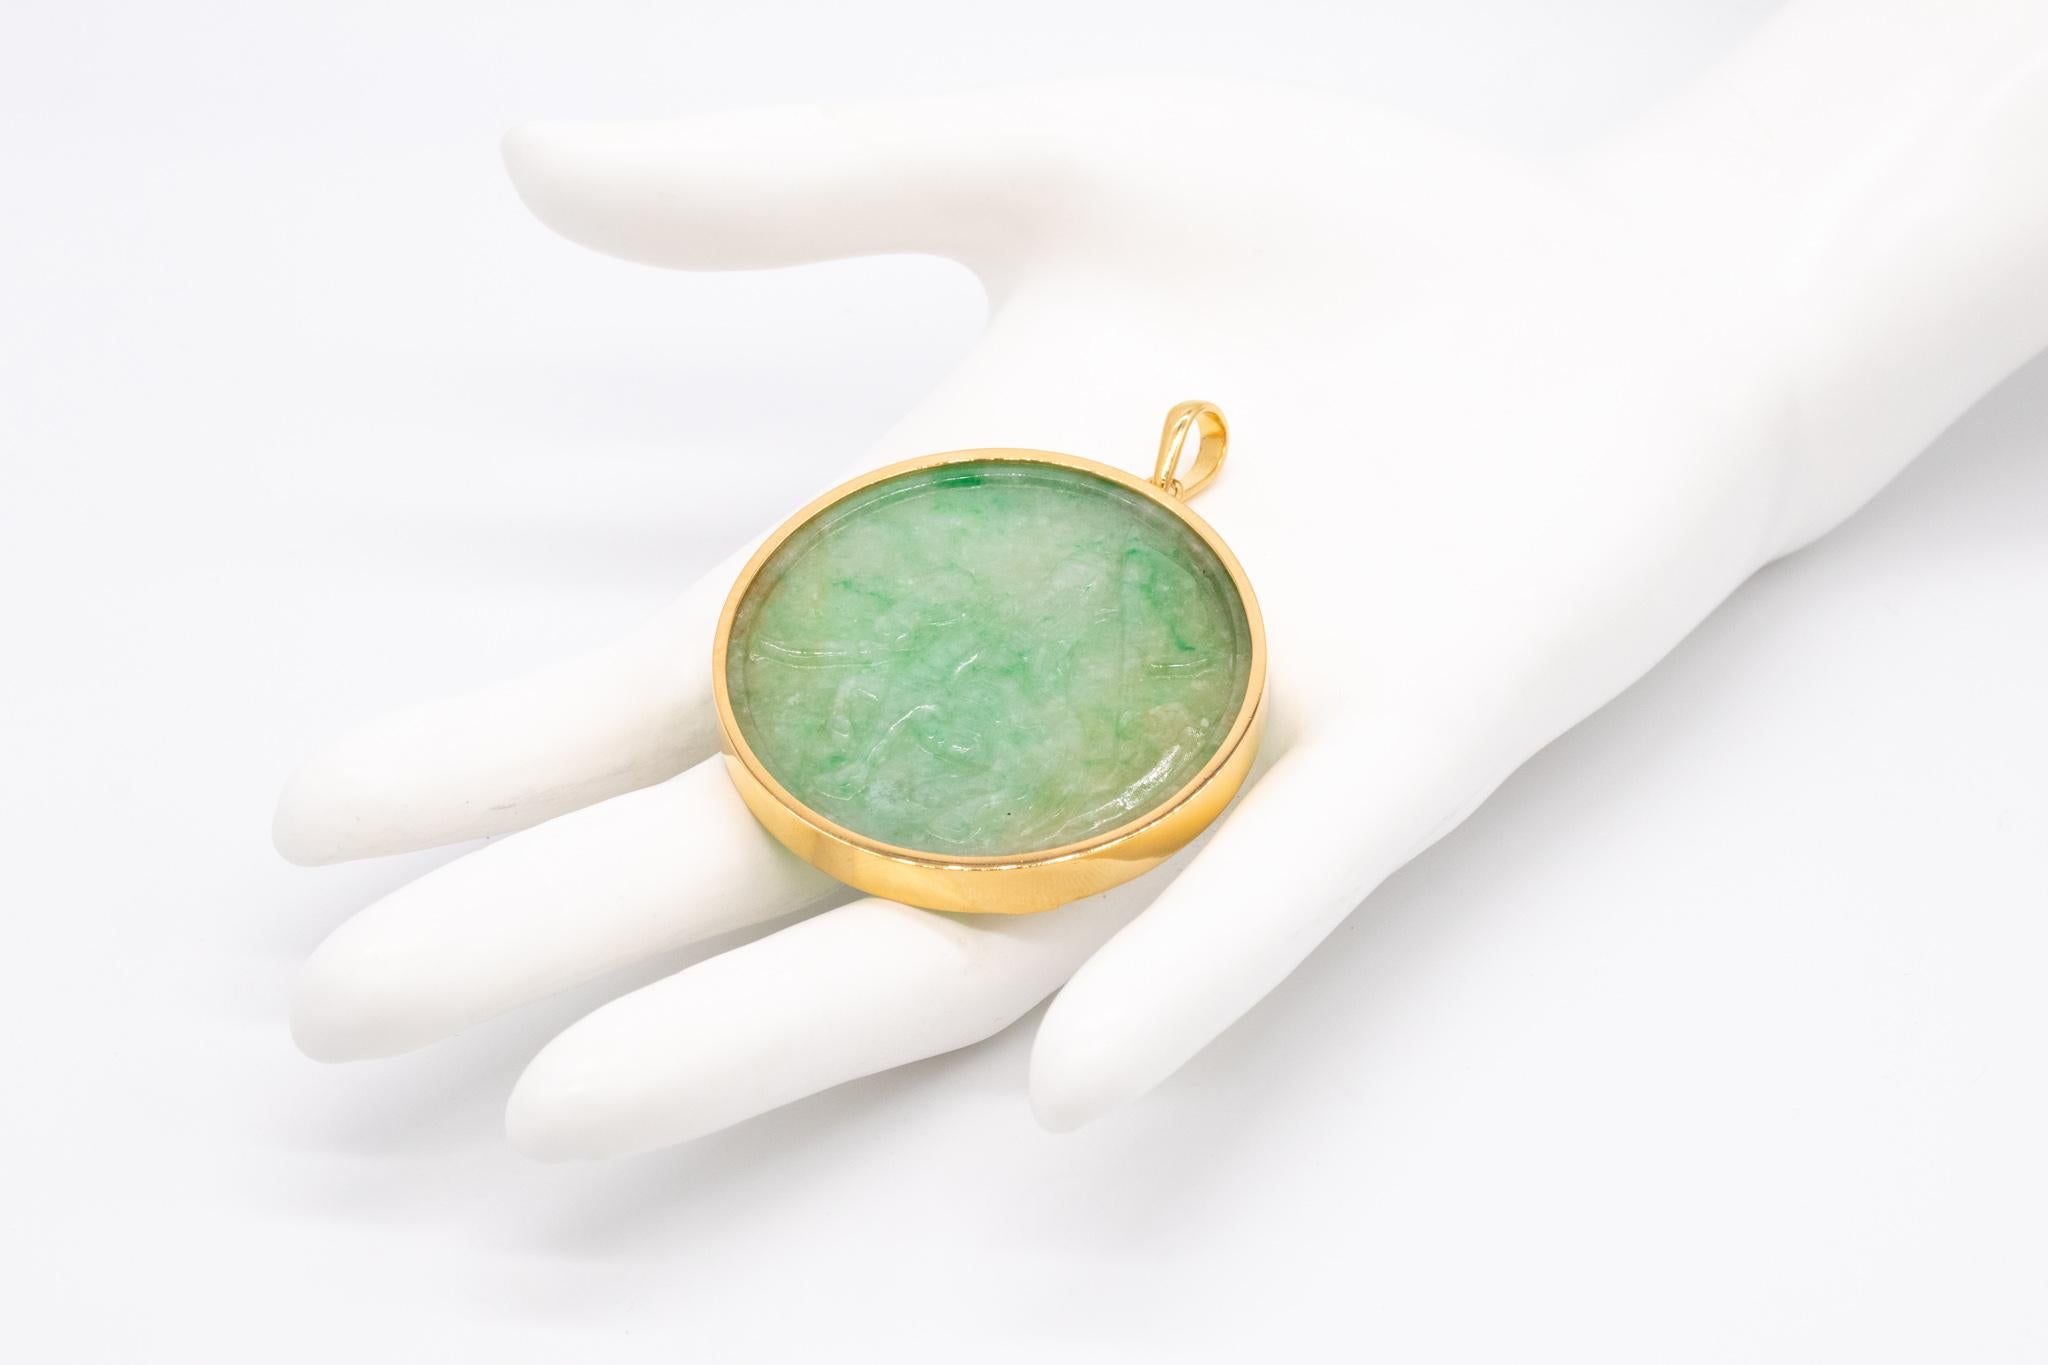 Magnifique pendentif chinois avec sculpture de Jade Vert Jade.

Une belle pièce de jade sculpté montée en bijou. Le jade est sculpté à partir d'une seule pièce et serti dans une monture sur mesure, fabriquée en or jaune massif de 18 carats, avec une